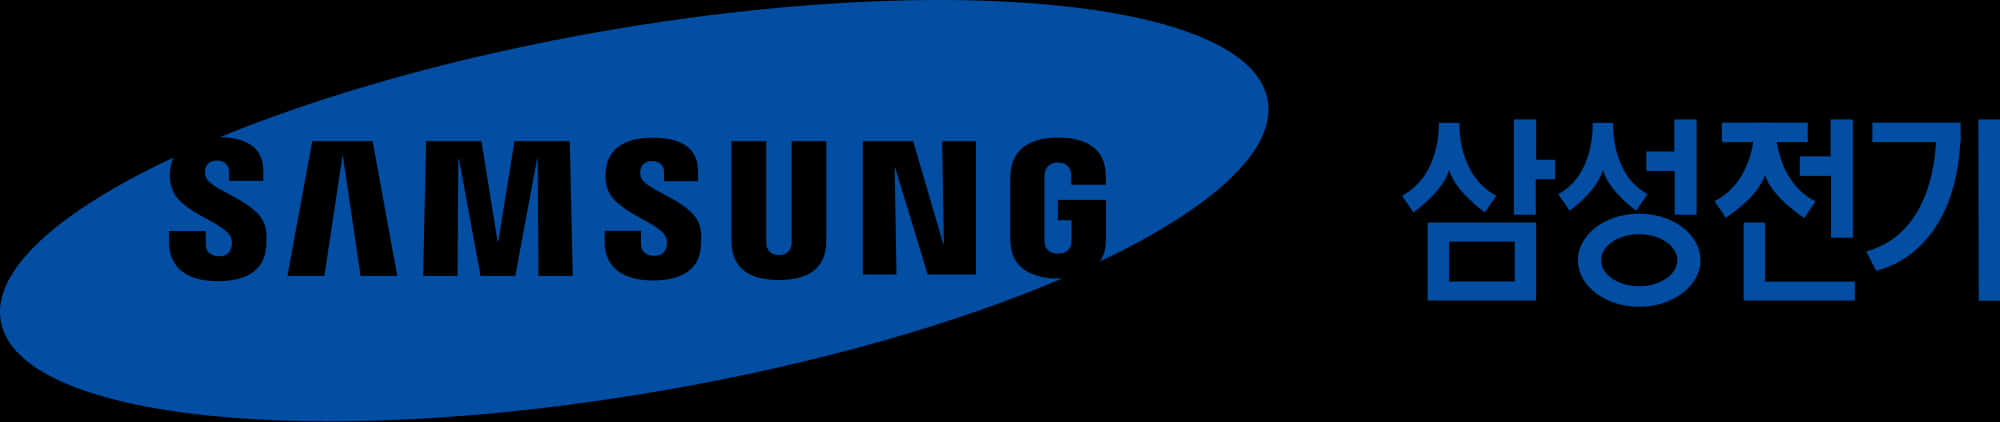 Samsung Logo Blue Ellipse